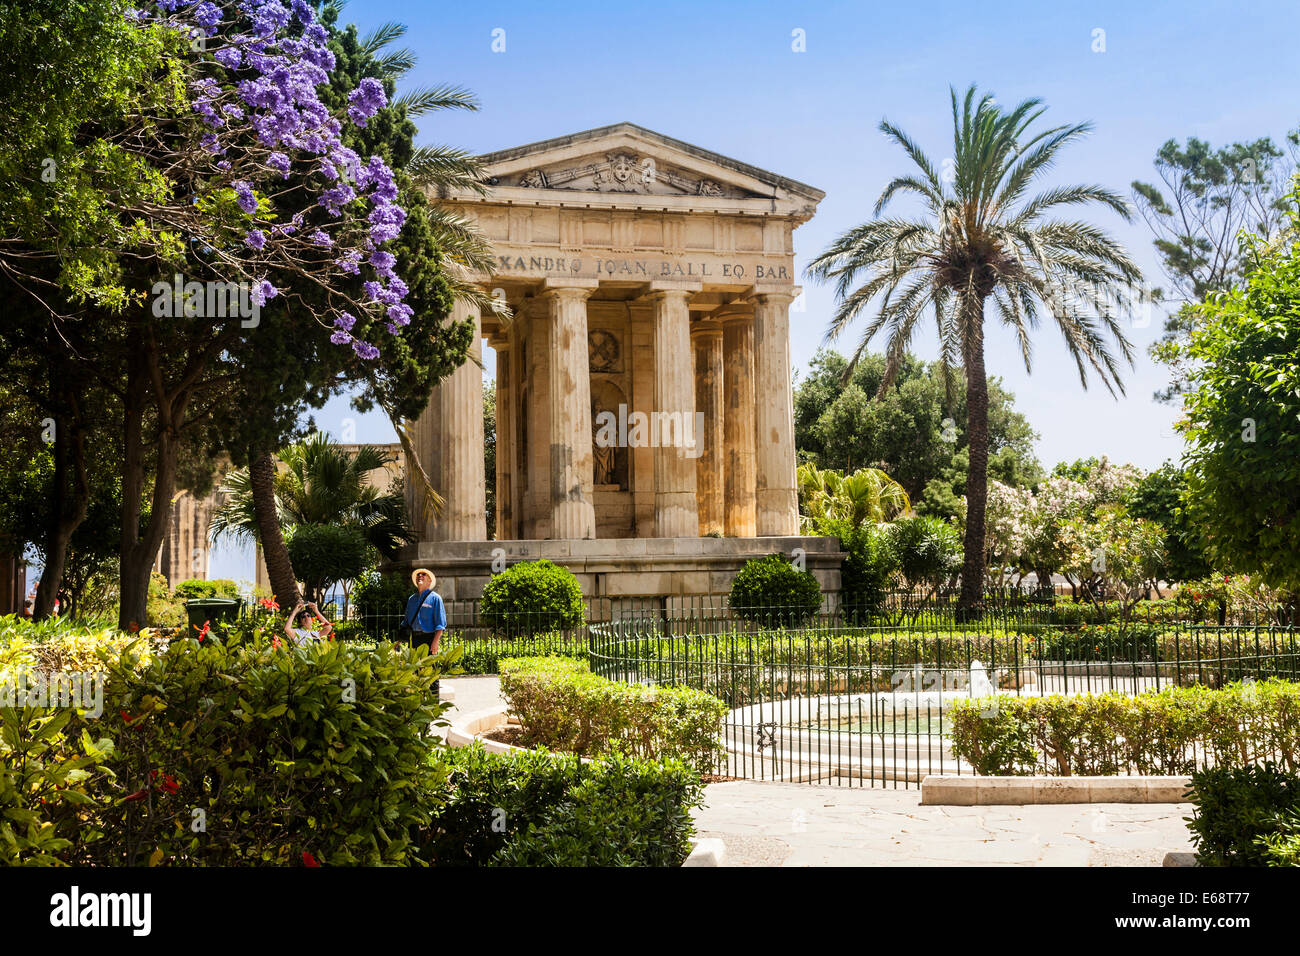 Lower Barrakka Gardens, Valletta, Malta Stock Photo